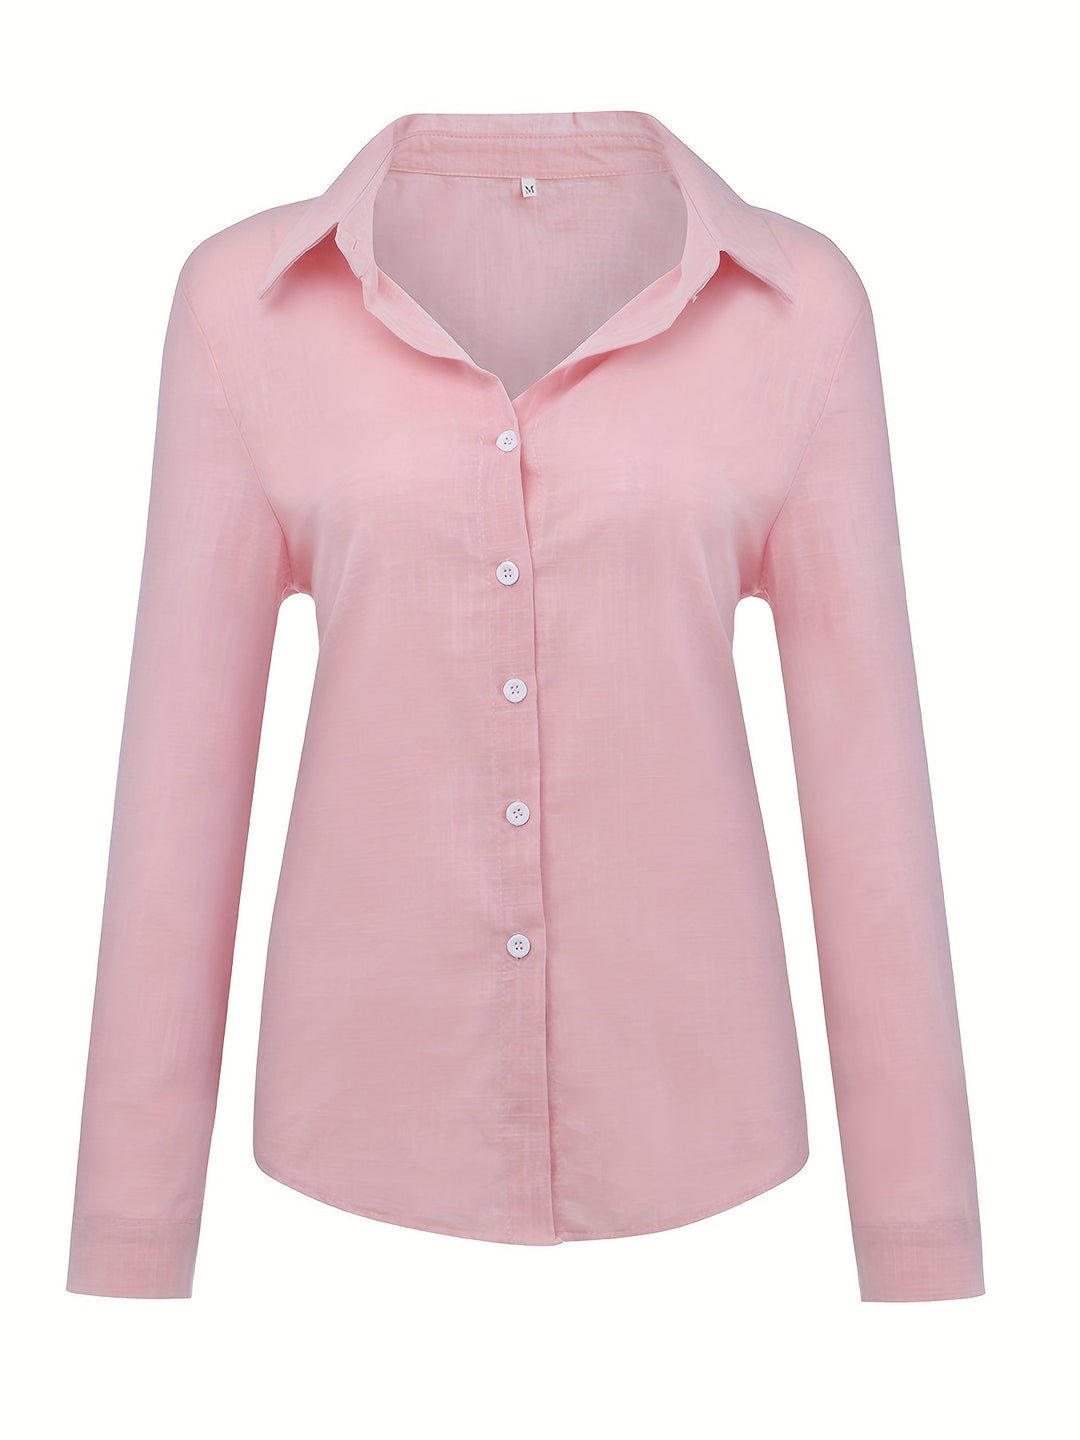 Elly | Long Sleeve Cotton & Linen Shirt